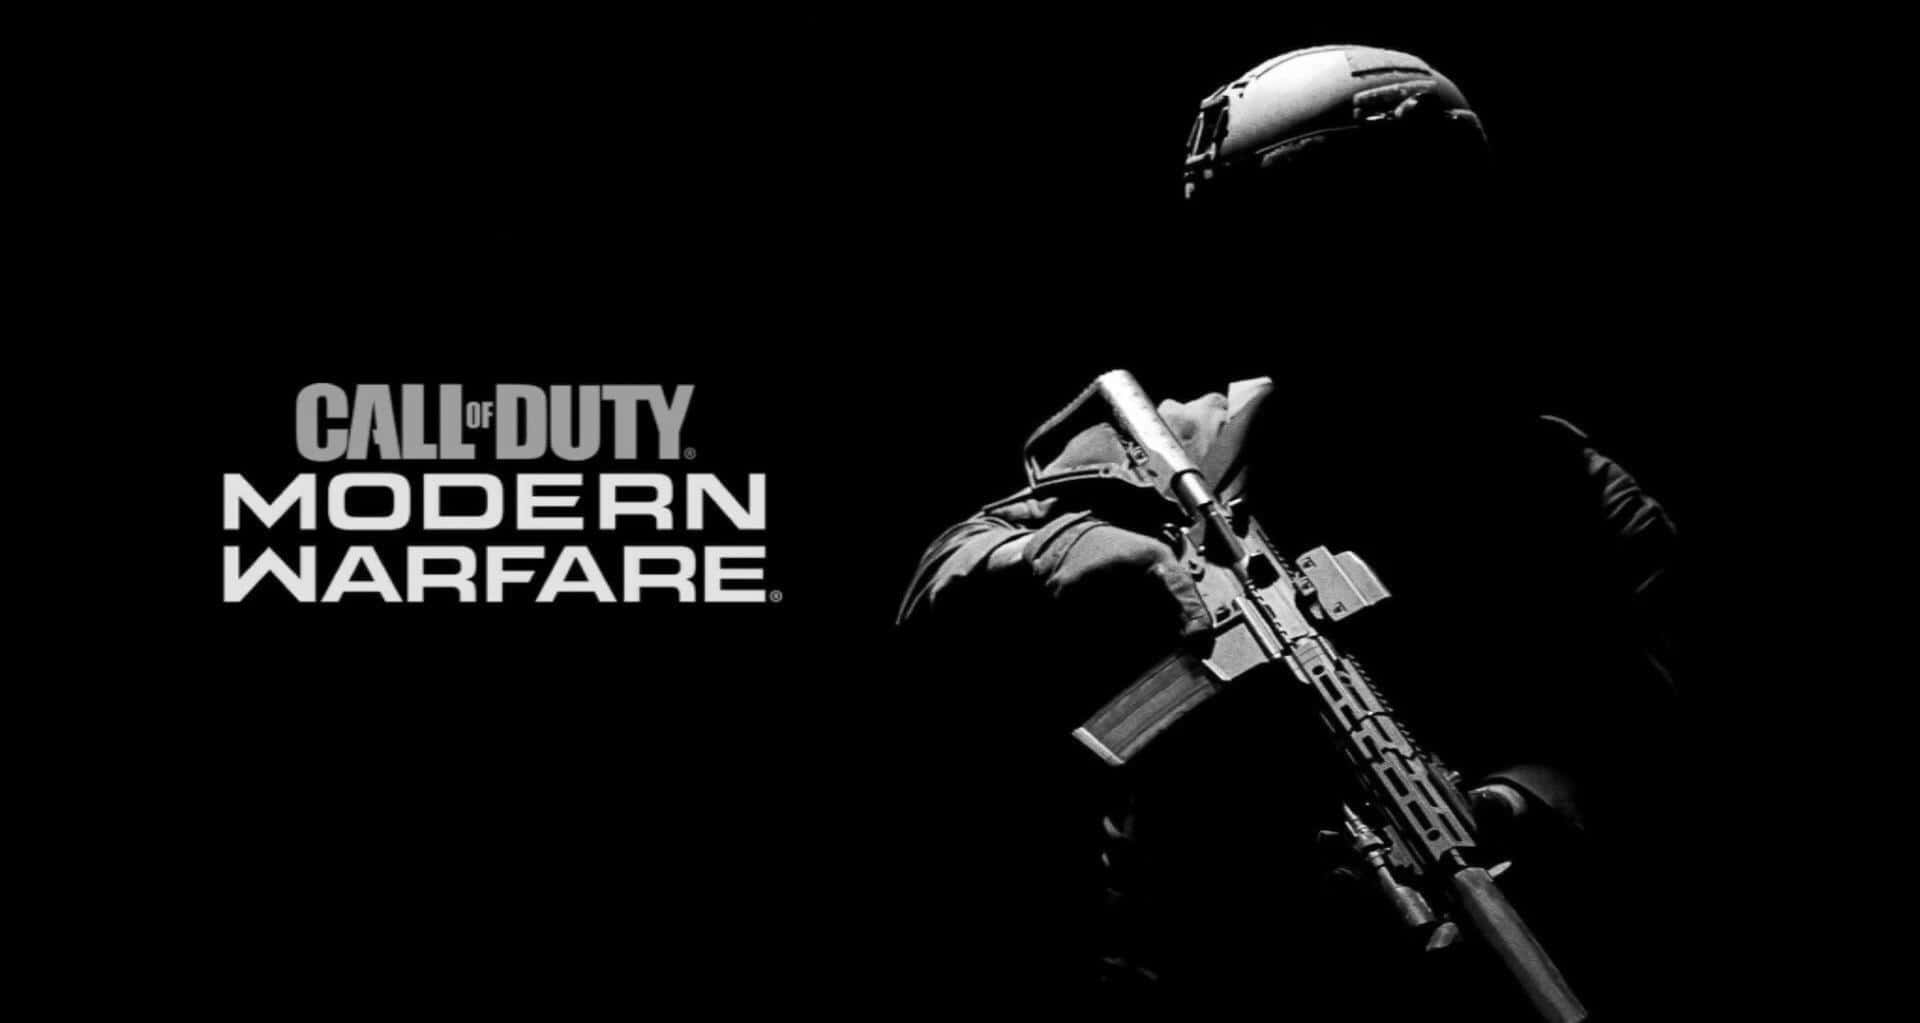 Stigin I Call Of Duty: Modern Warfare Världen.